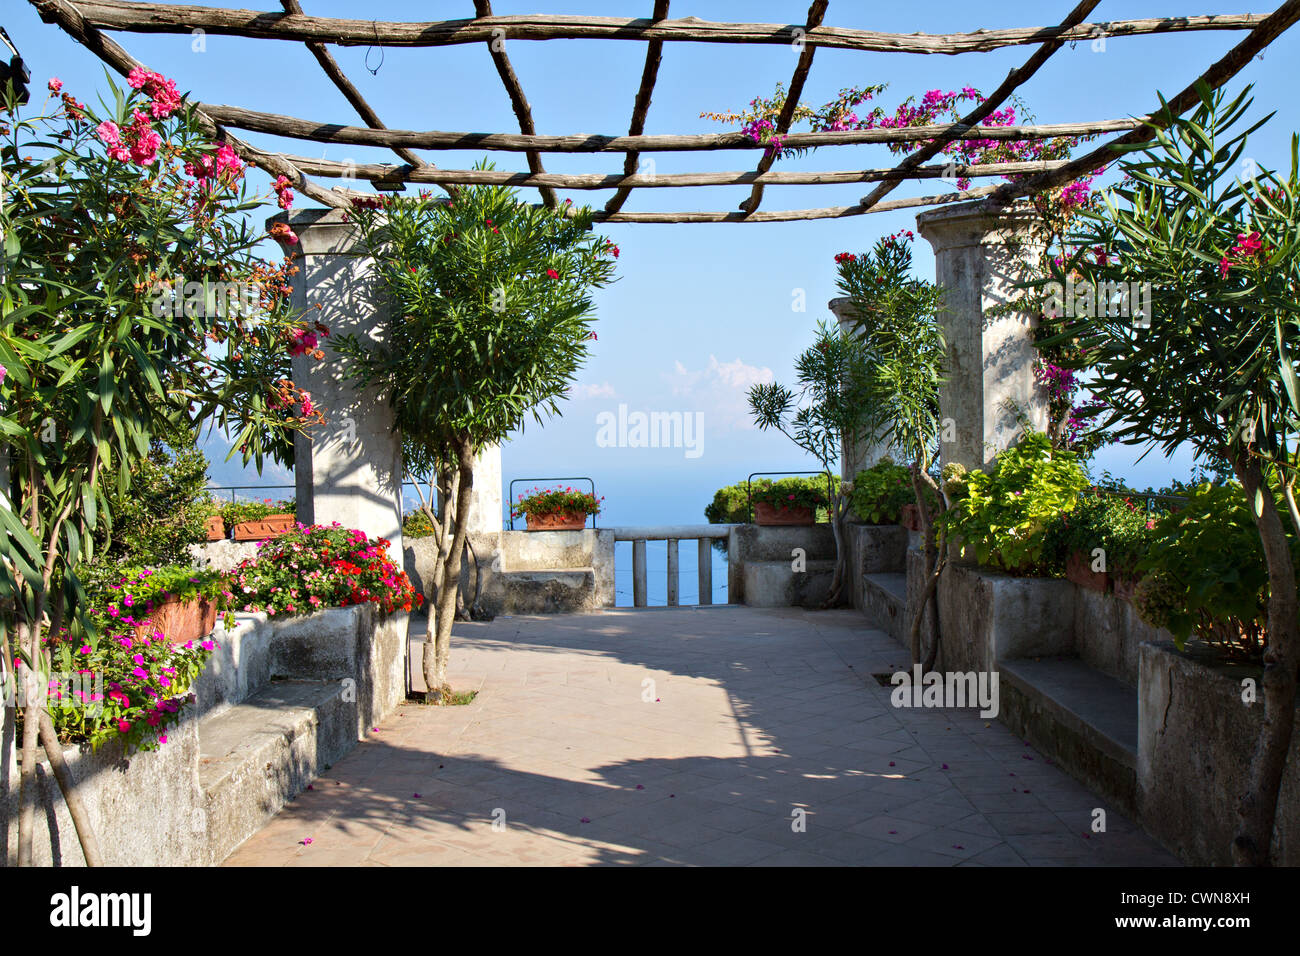 Mediterranean Garden at a villa in Ravello, Campania, Italy Stock Photo